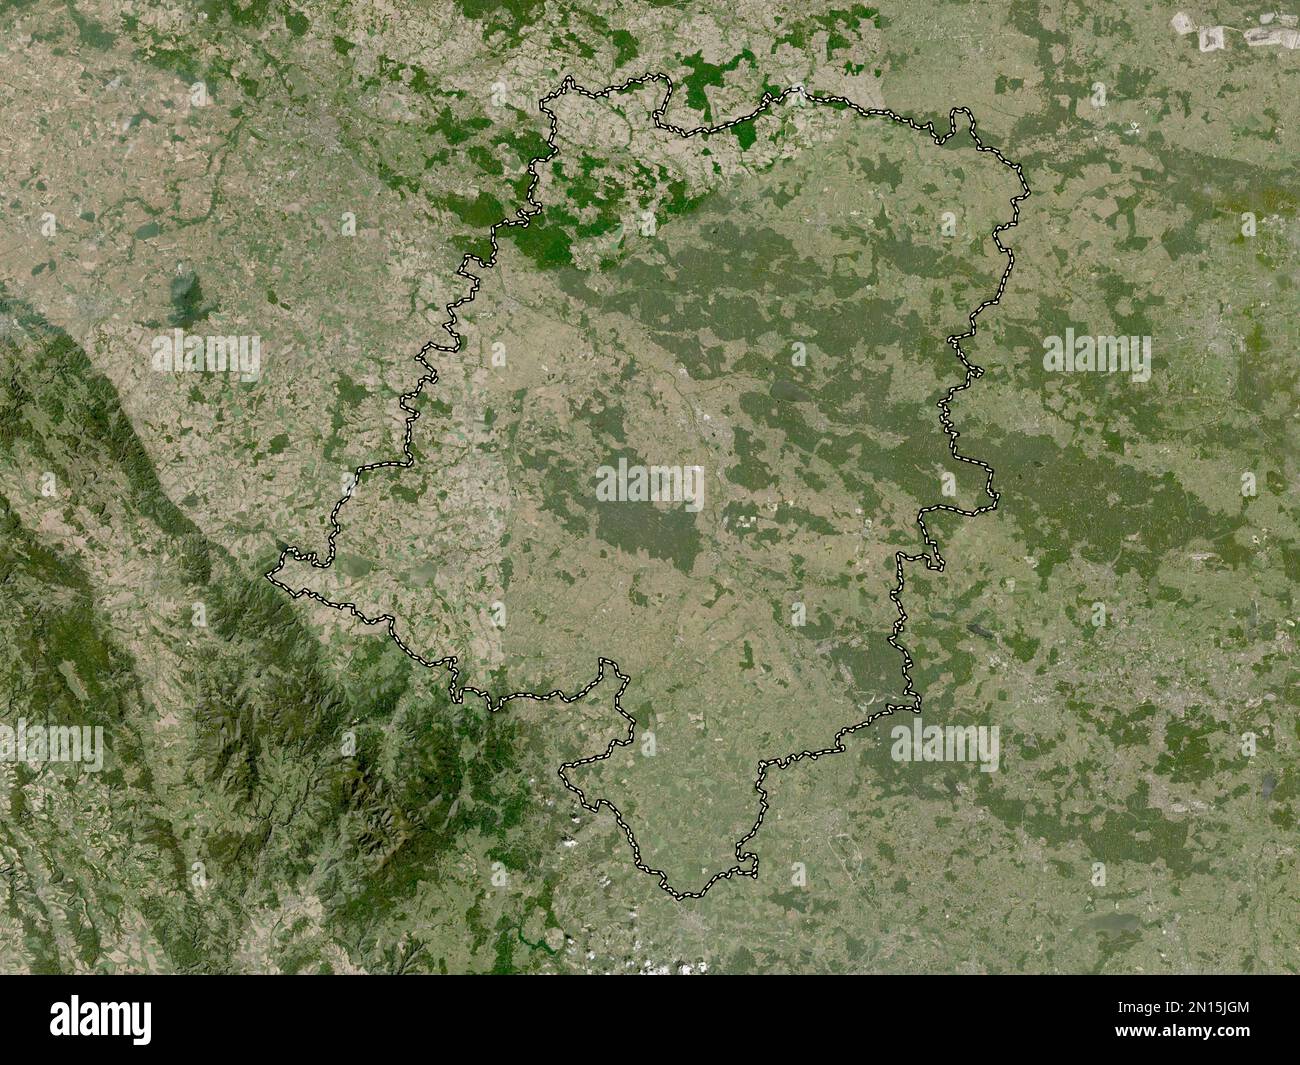 Opolskie, voivodato|provincia di Polonia. Mappa satellitare a bassa risoluzione Foto Stock